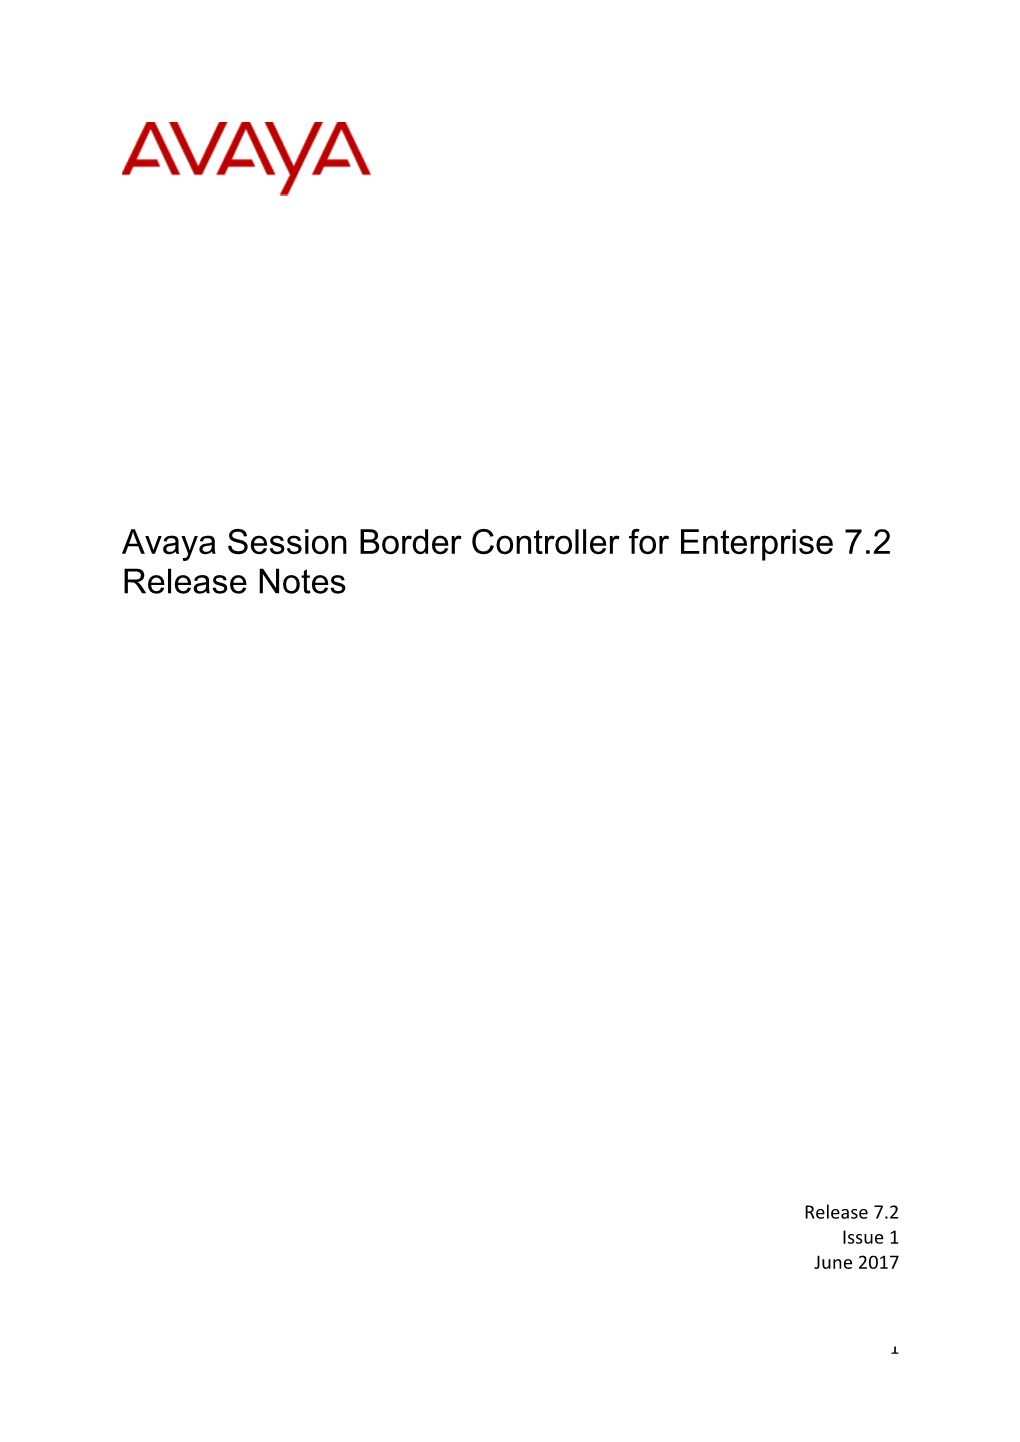 Avaya Session Border Controller for Enterprise 7.2 Release Notes